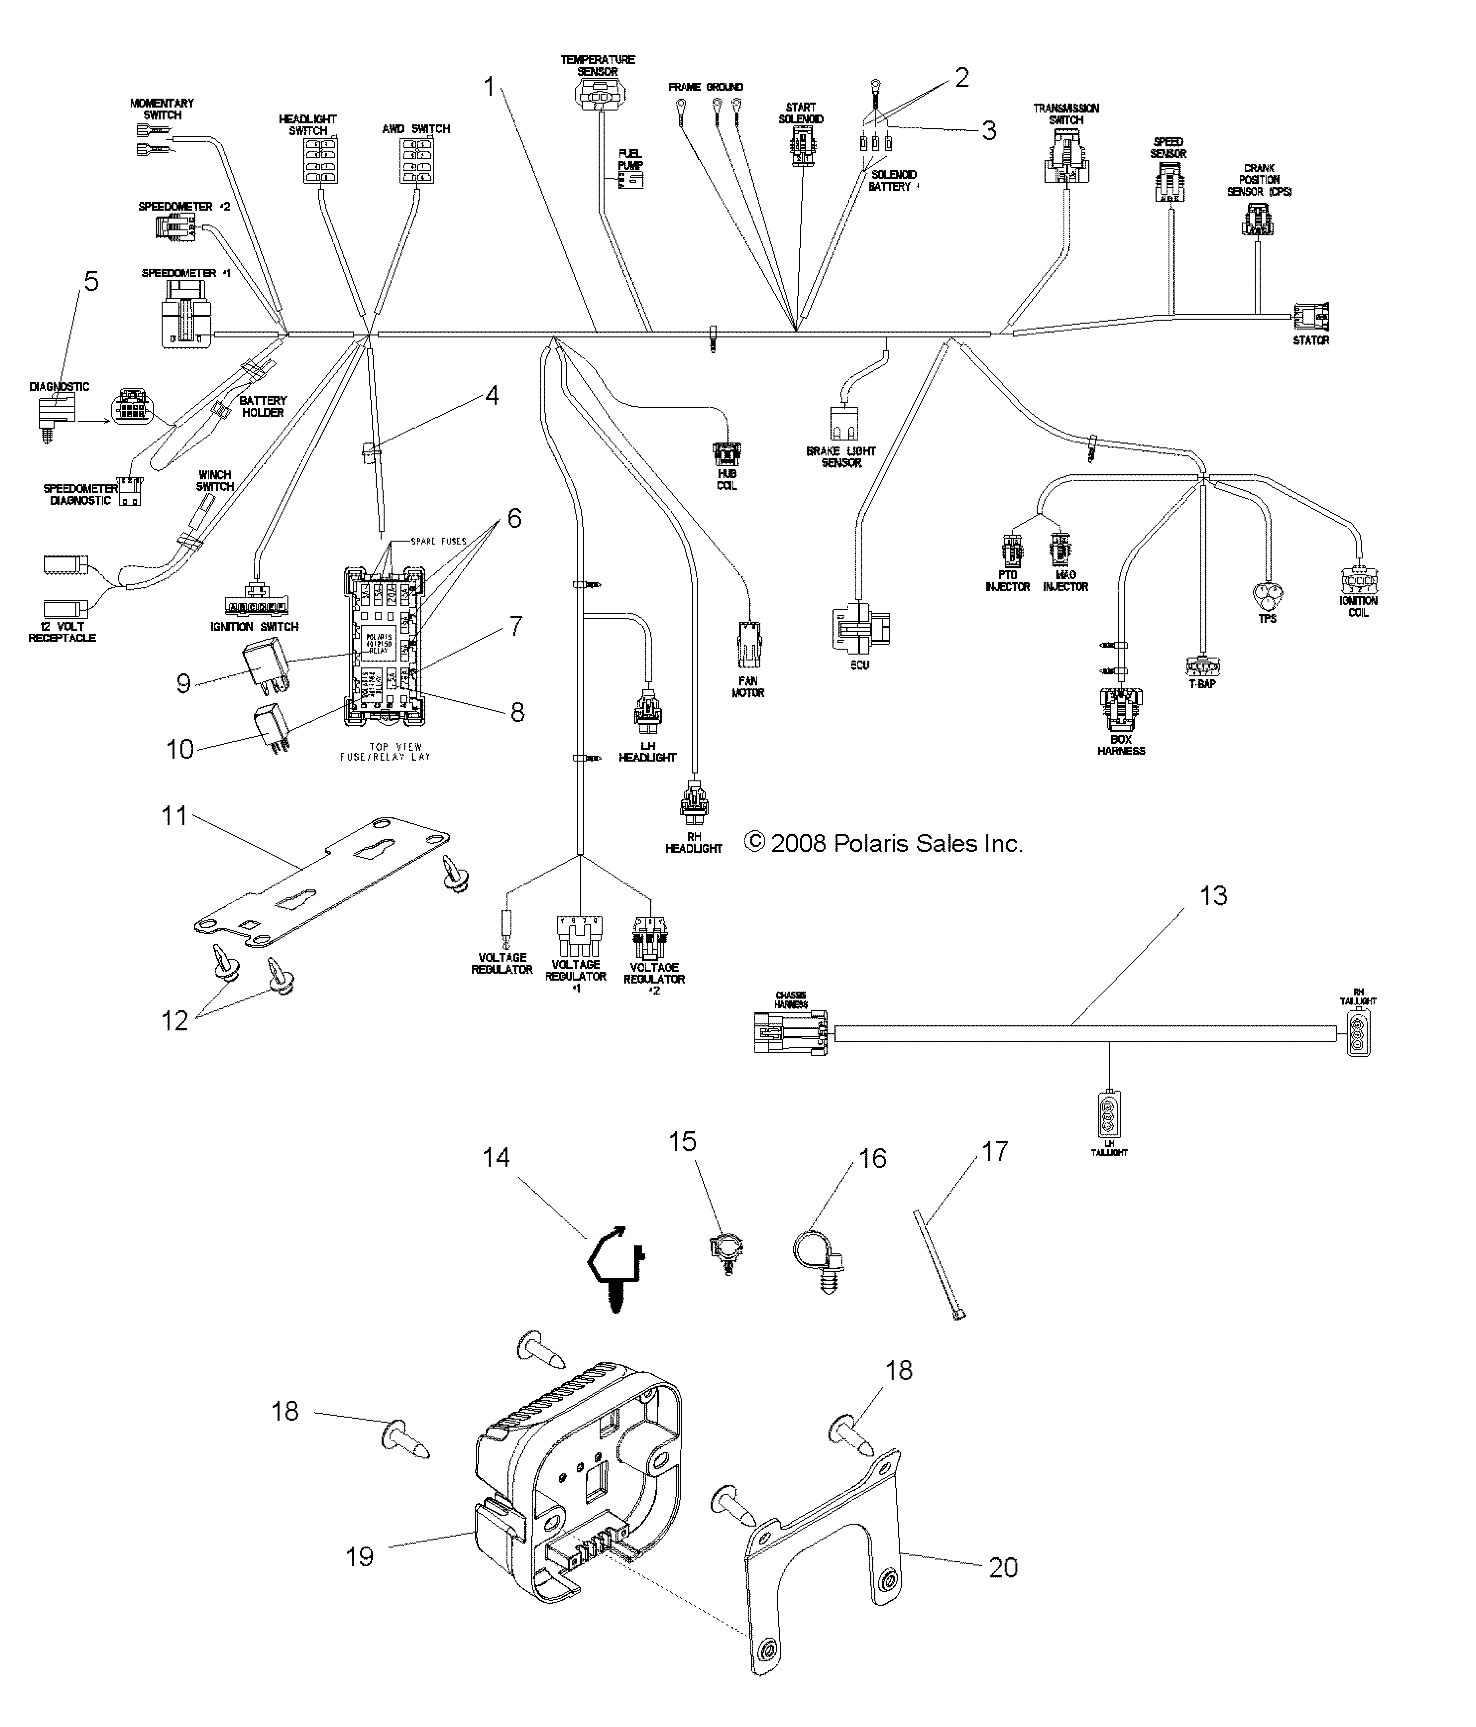 Foto diagrama Polaris que contem a peça 4012150